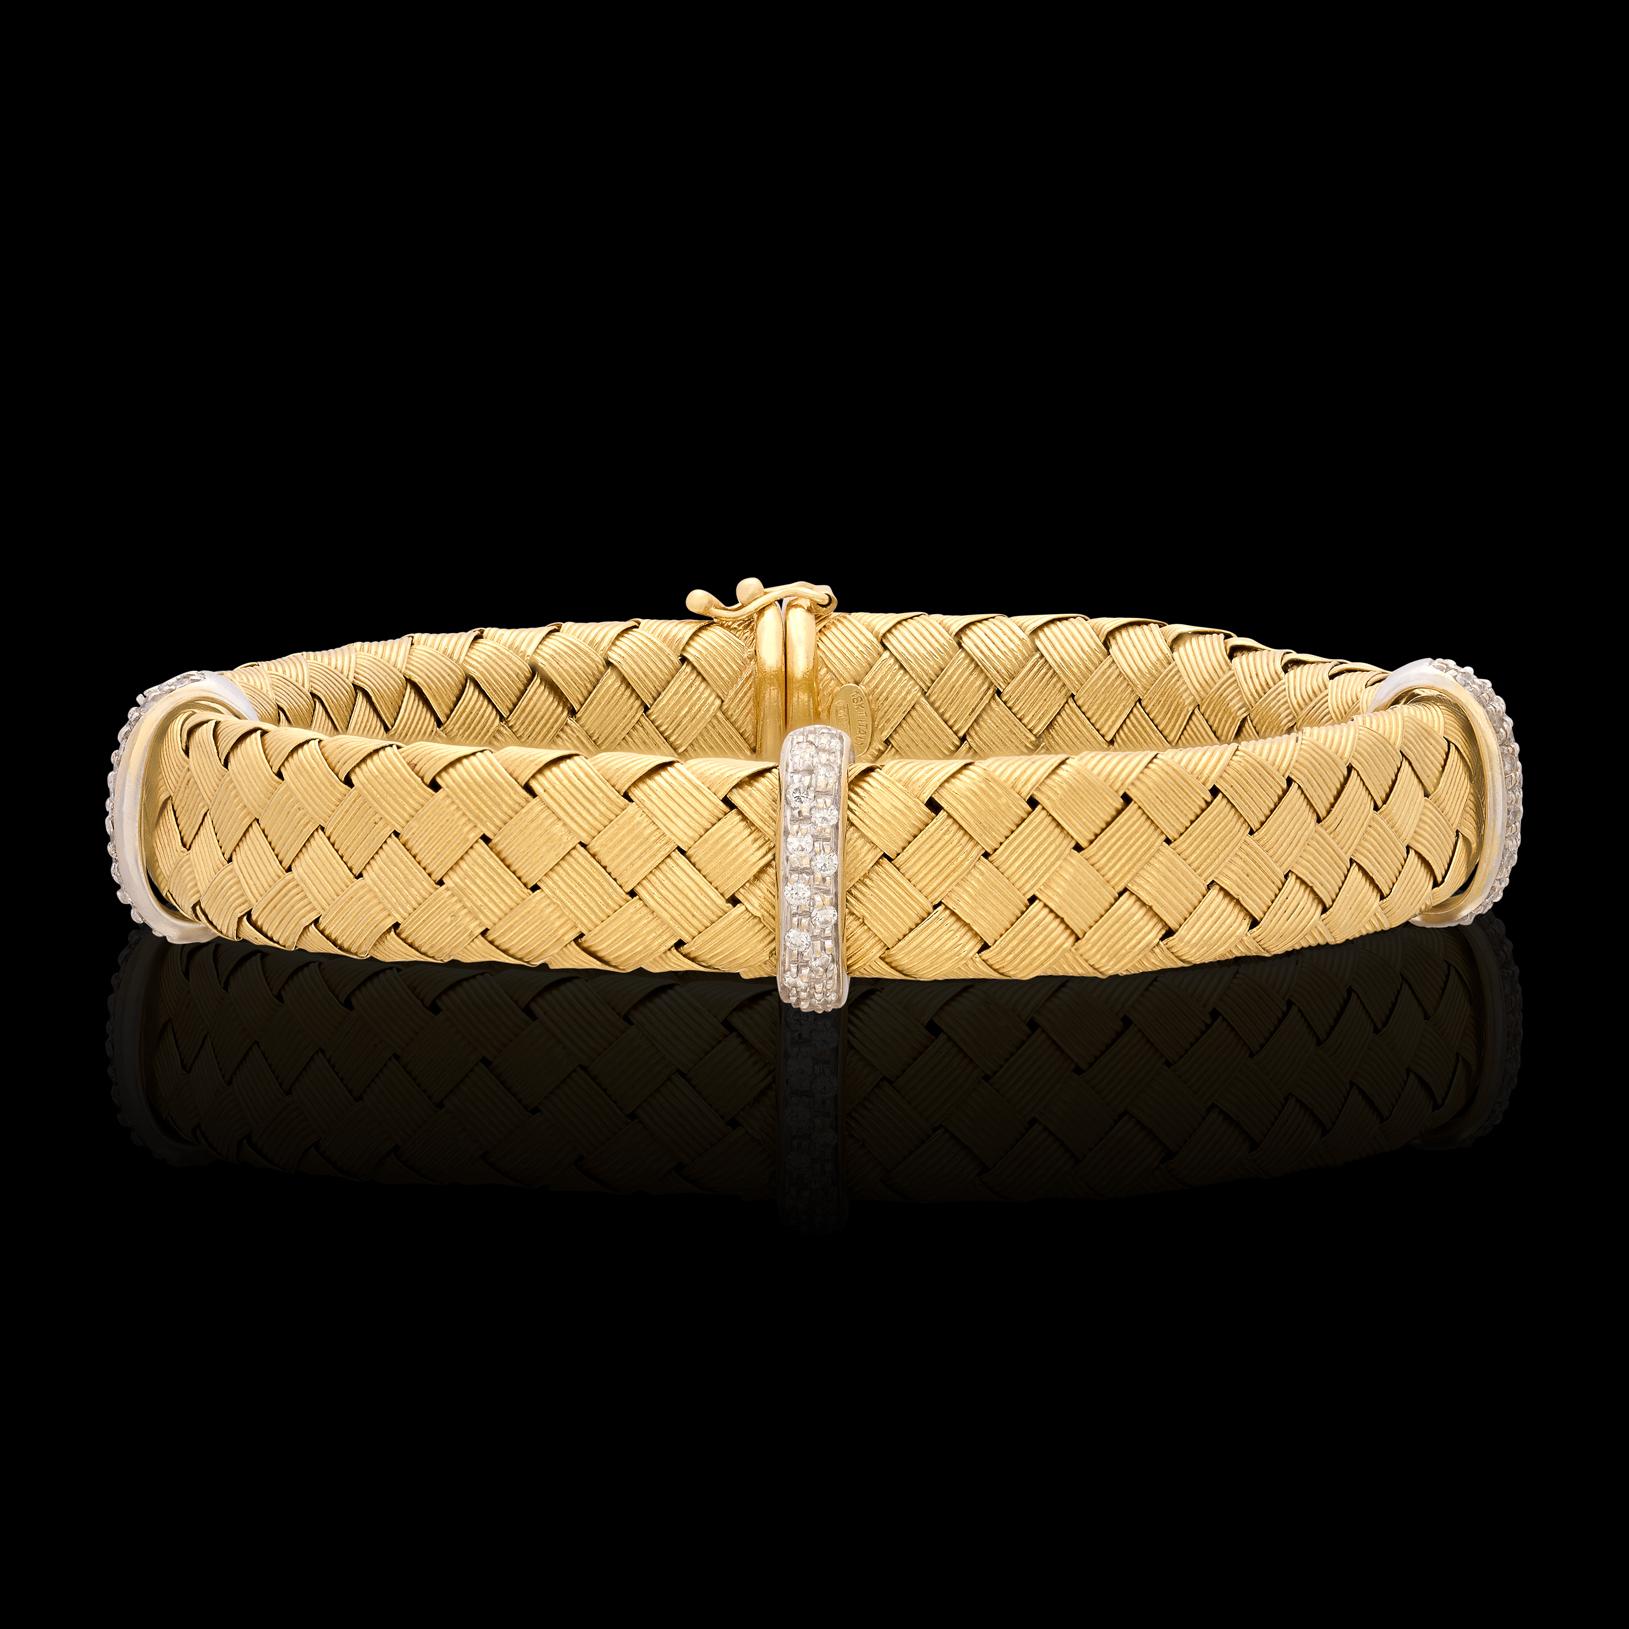 Stil für Tage! Dieses modische, zweifarbige Armband aus 18-karätigem Gold ist mit 0,40 Karat Diamanten und einem blauen Saphir im Cabochon-Schliff besetzt, die sich perfekt in eine Goldspange im Maschenstil einfügen. Das Armband wiegt 34 Gramm und